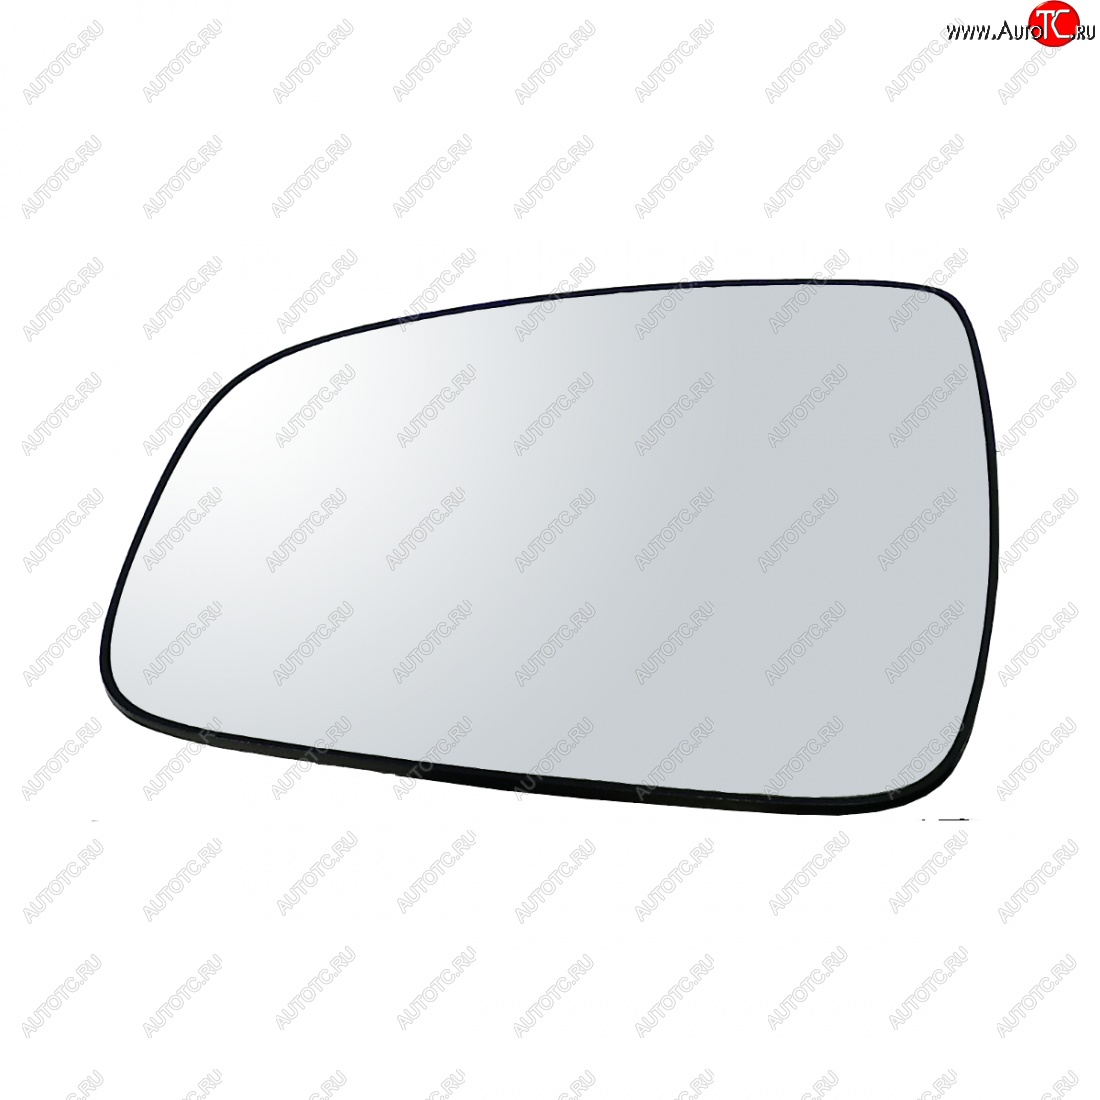 399 р. Левый зеркальный элемент (обогрев) Автоблик2 Renault Sandero (BS) (2009-2014) (без антибликового покрытия)